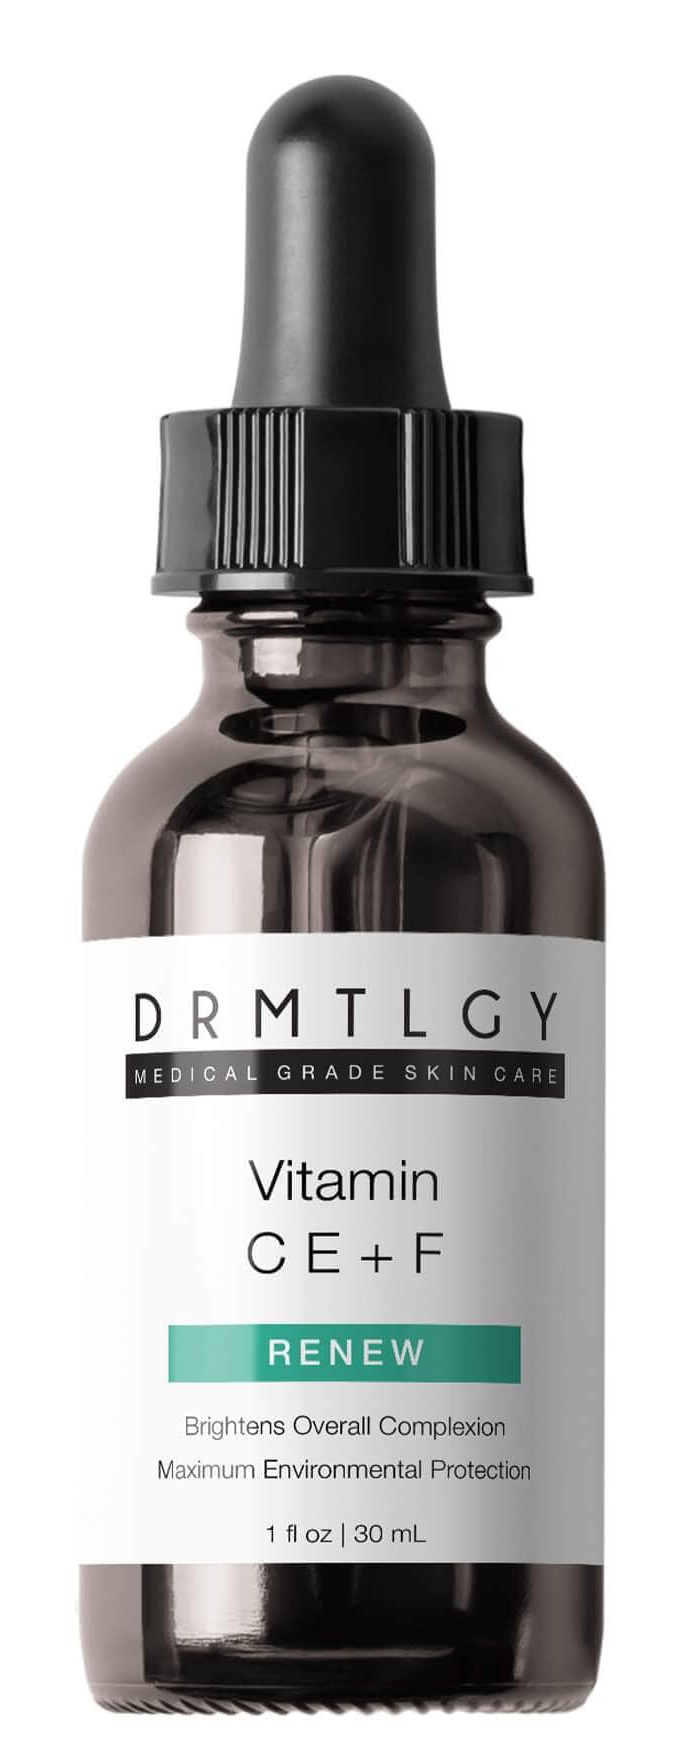 DRMTLGY Vitamin C E + F